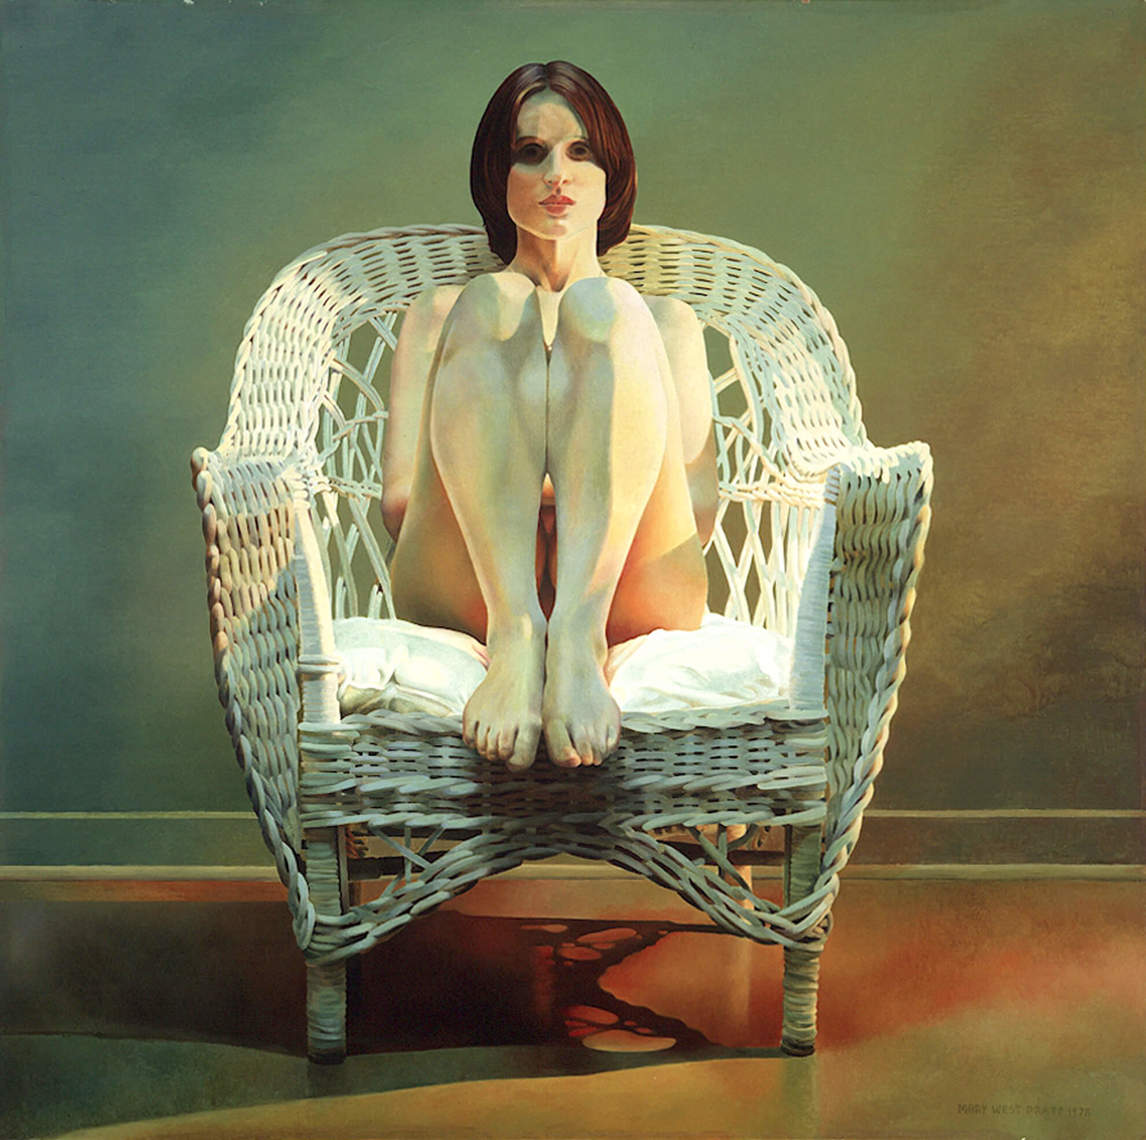 Girl in Wicker Chair, 1978